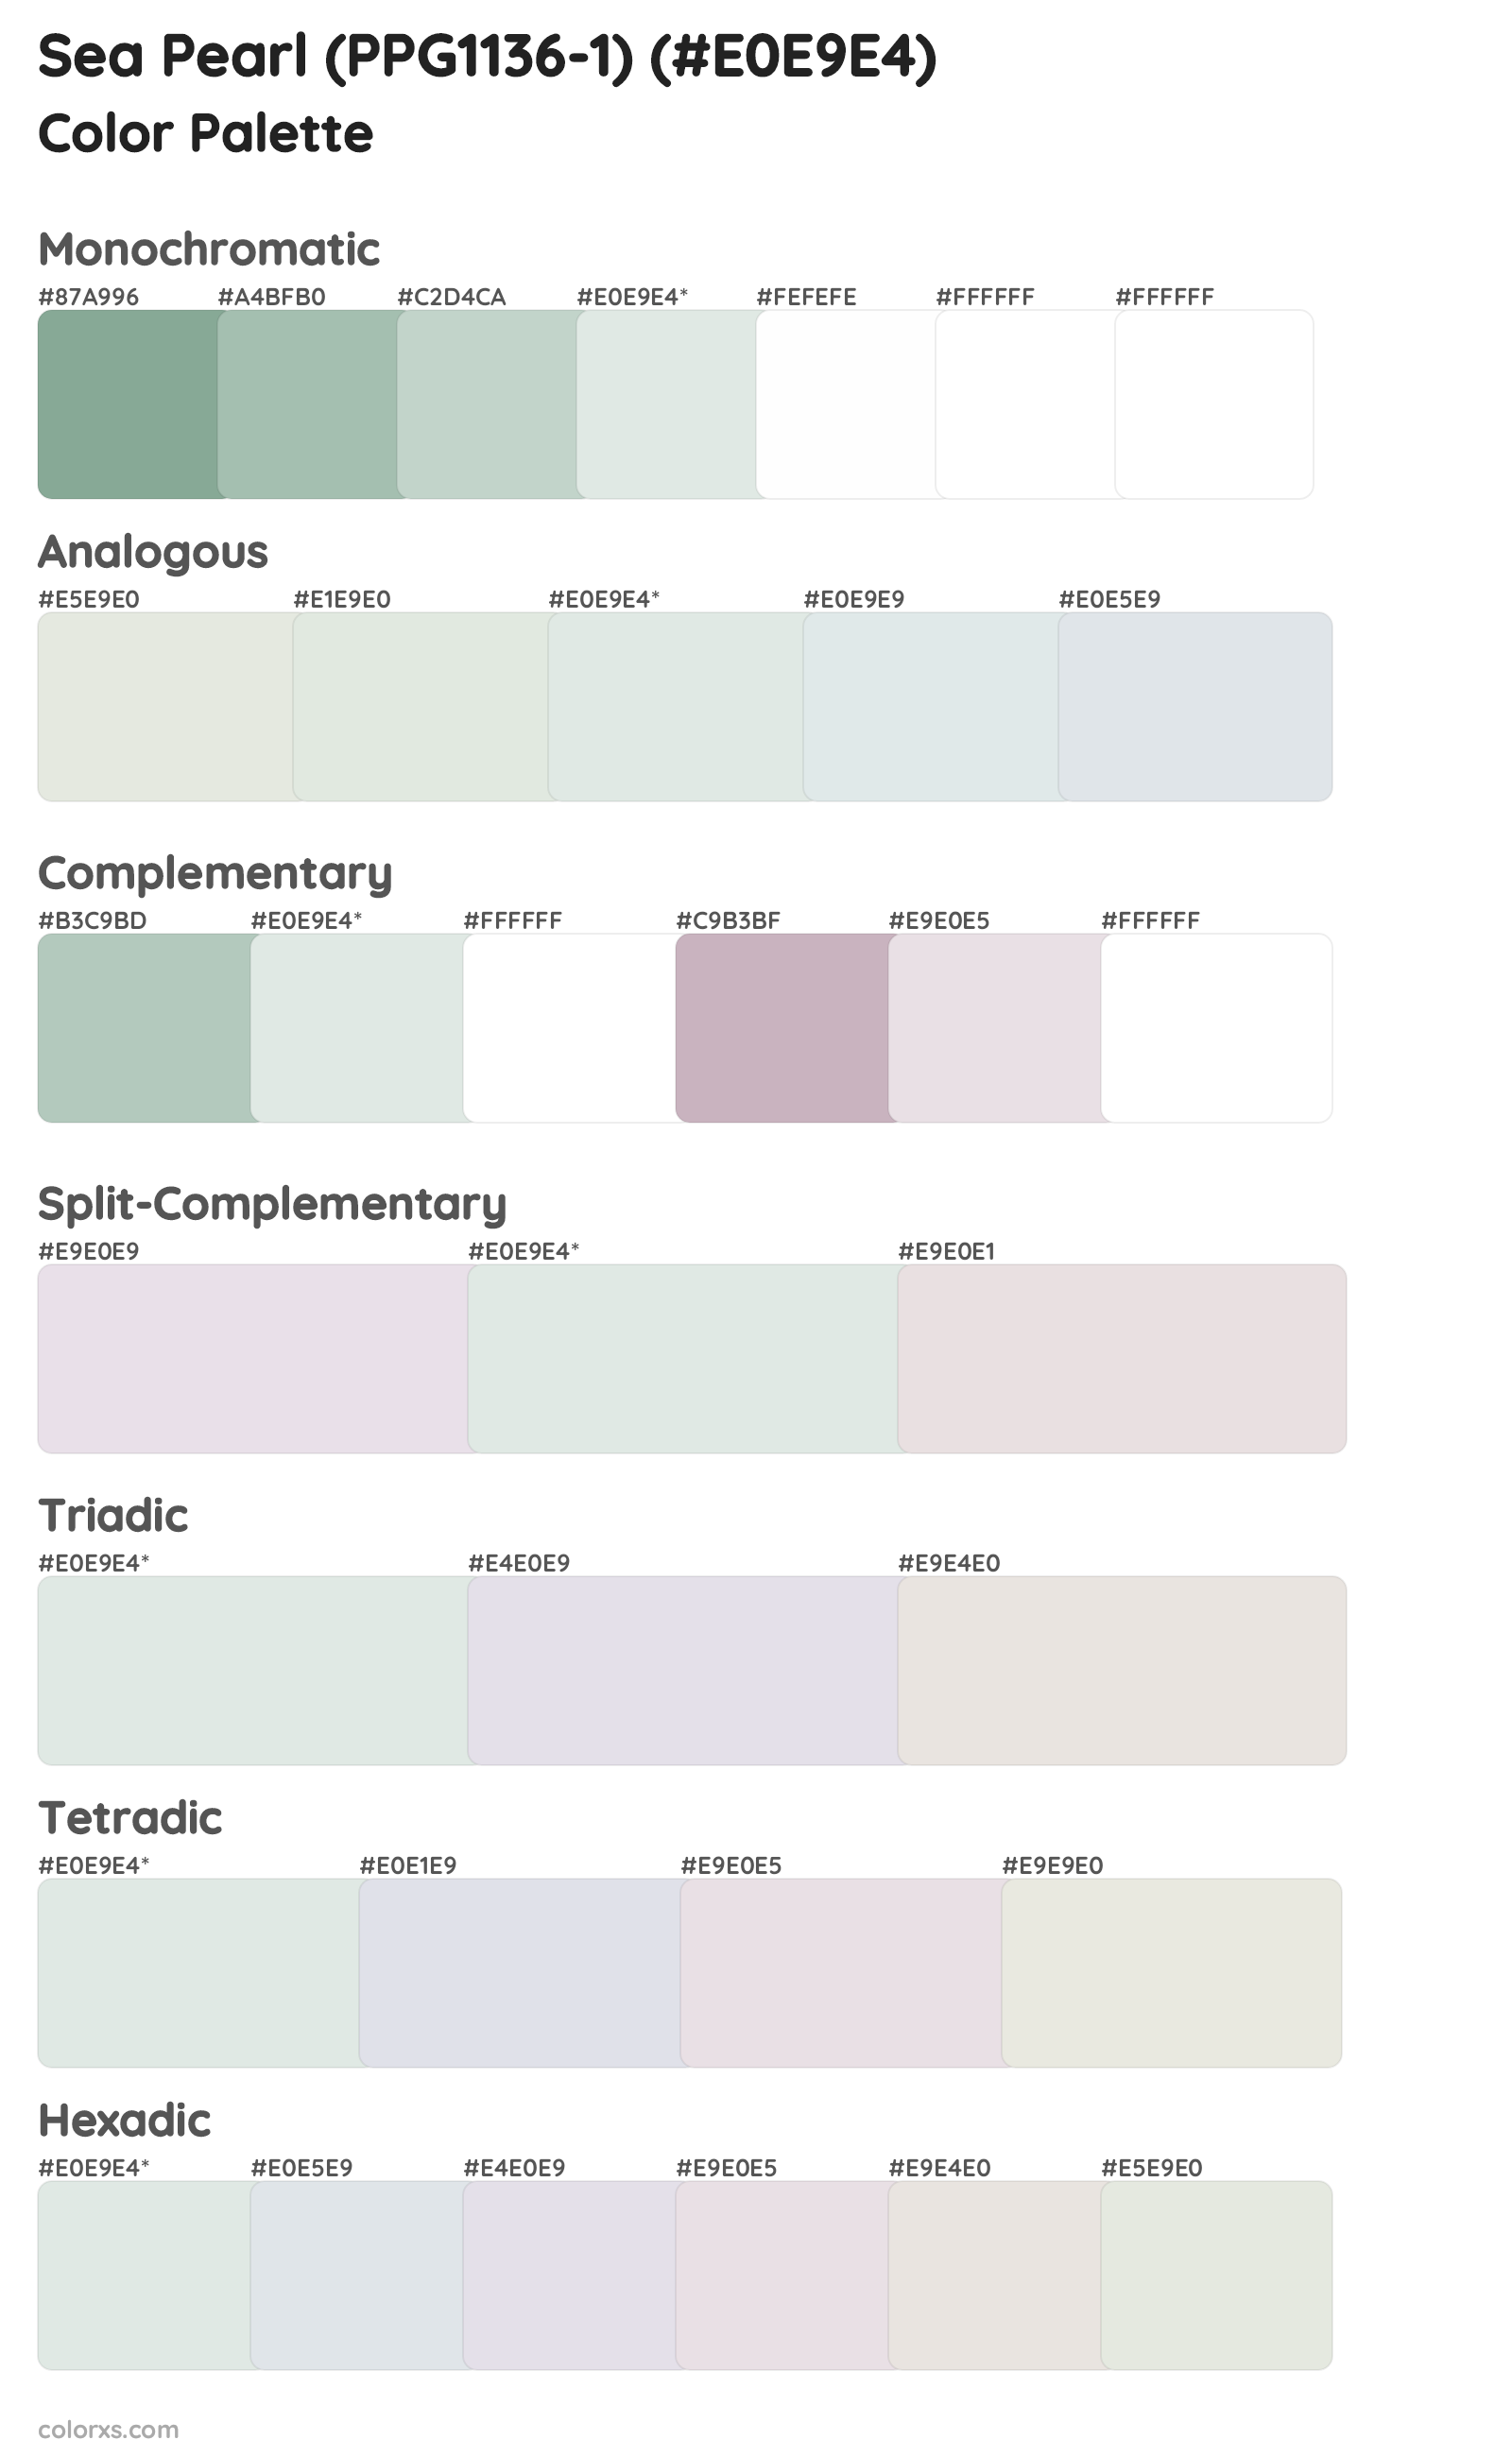 Sea Pearl (PPG1136-1) Color Scheme Palettes